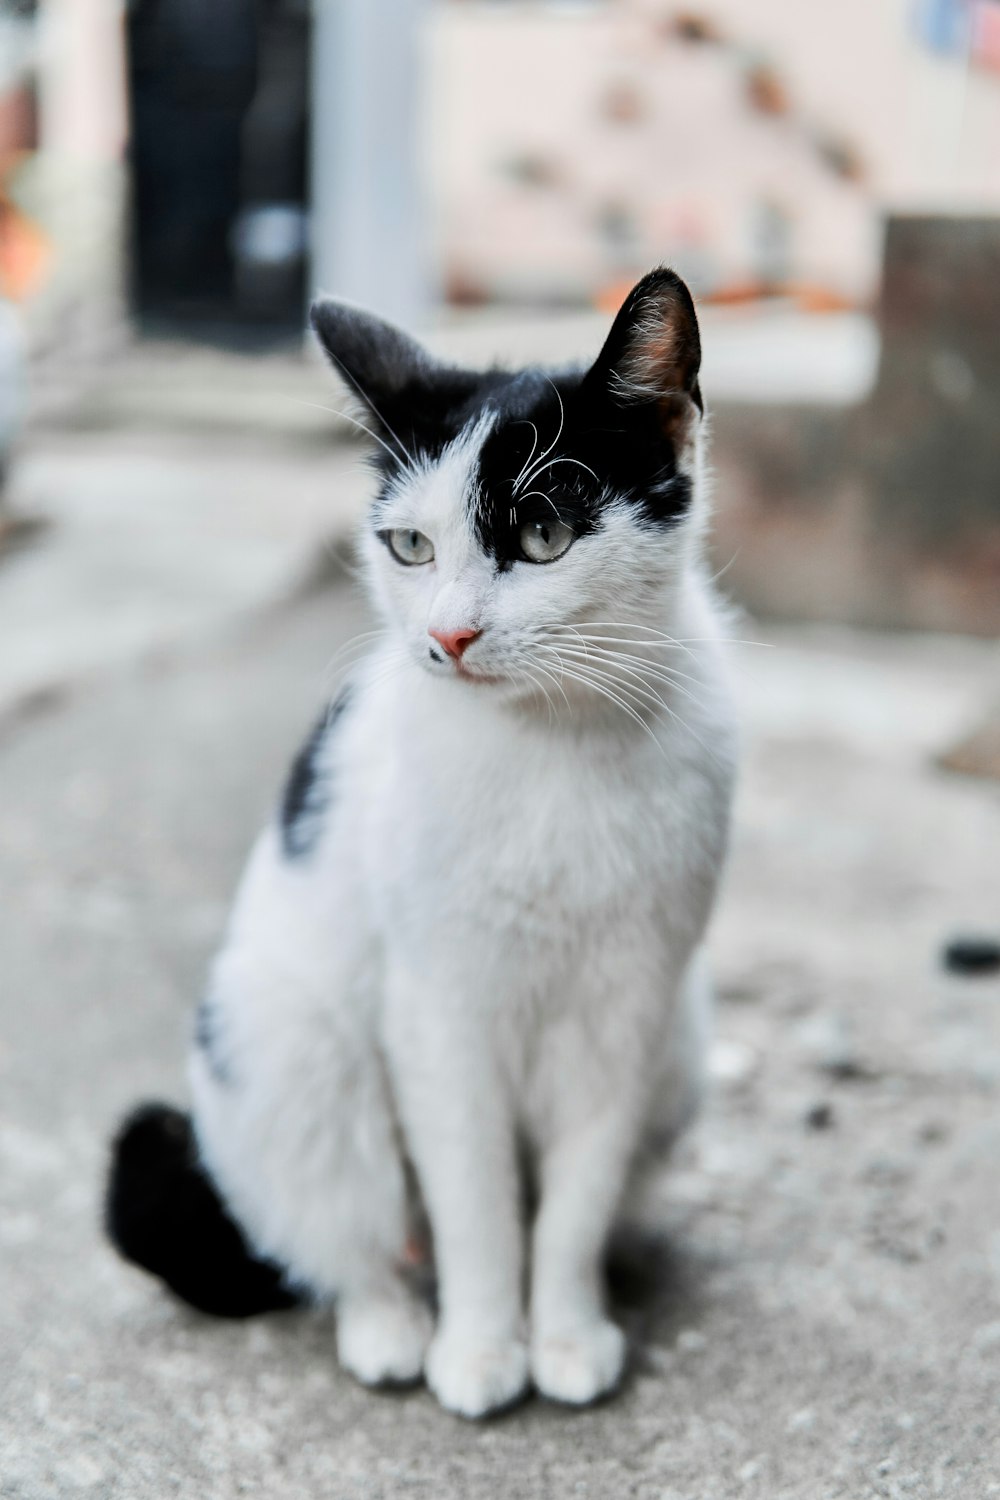 gato blanco y negro sobre piso de concreto gris